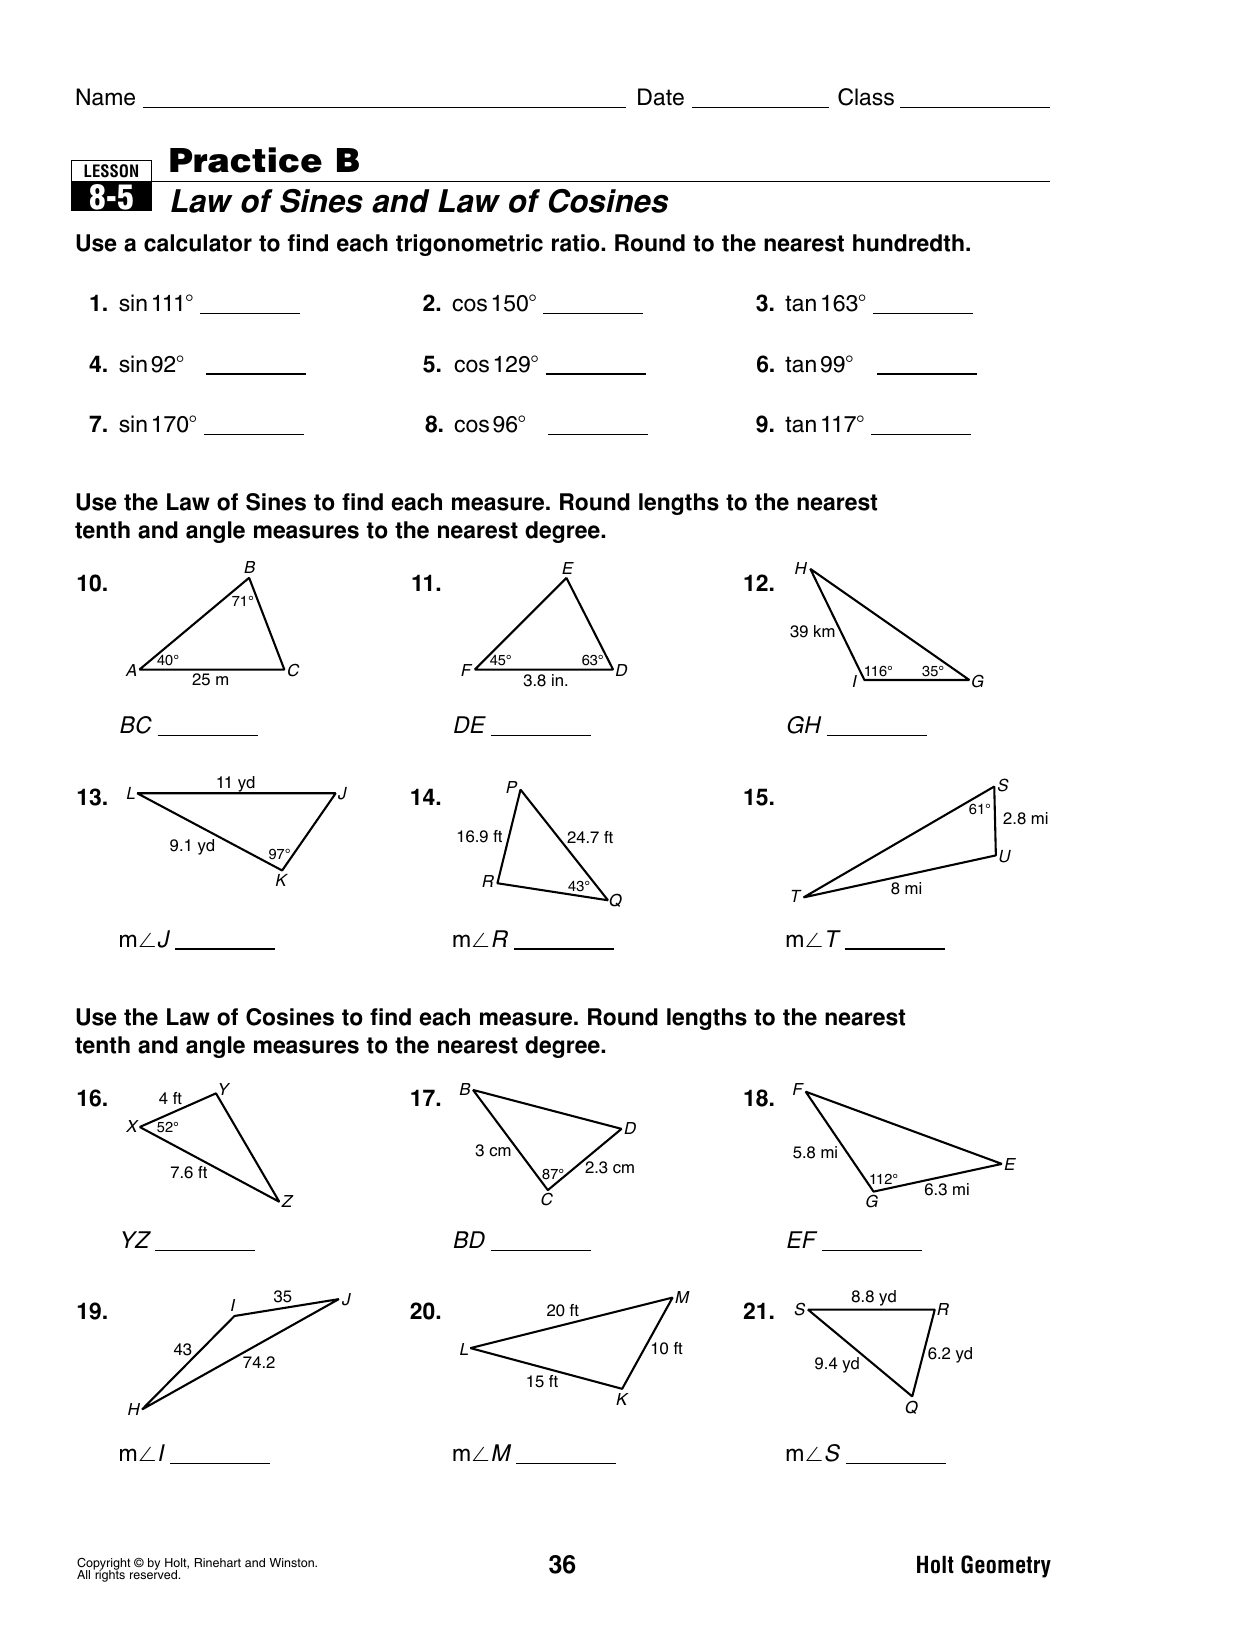 homework 6 law of sines